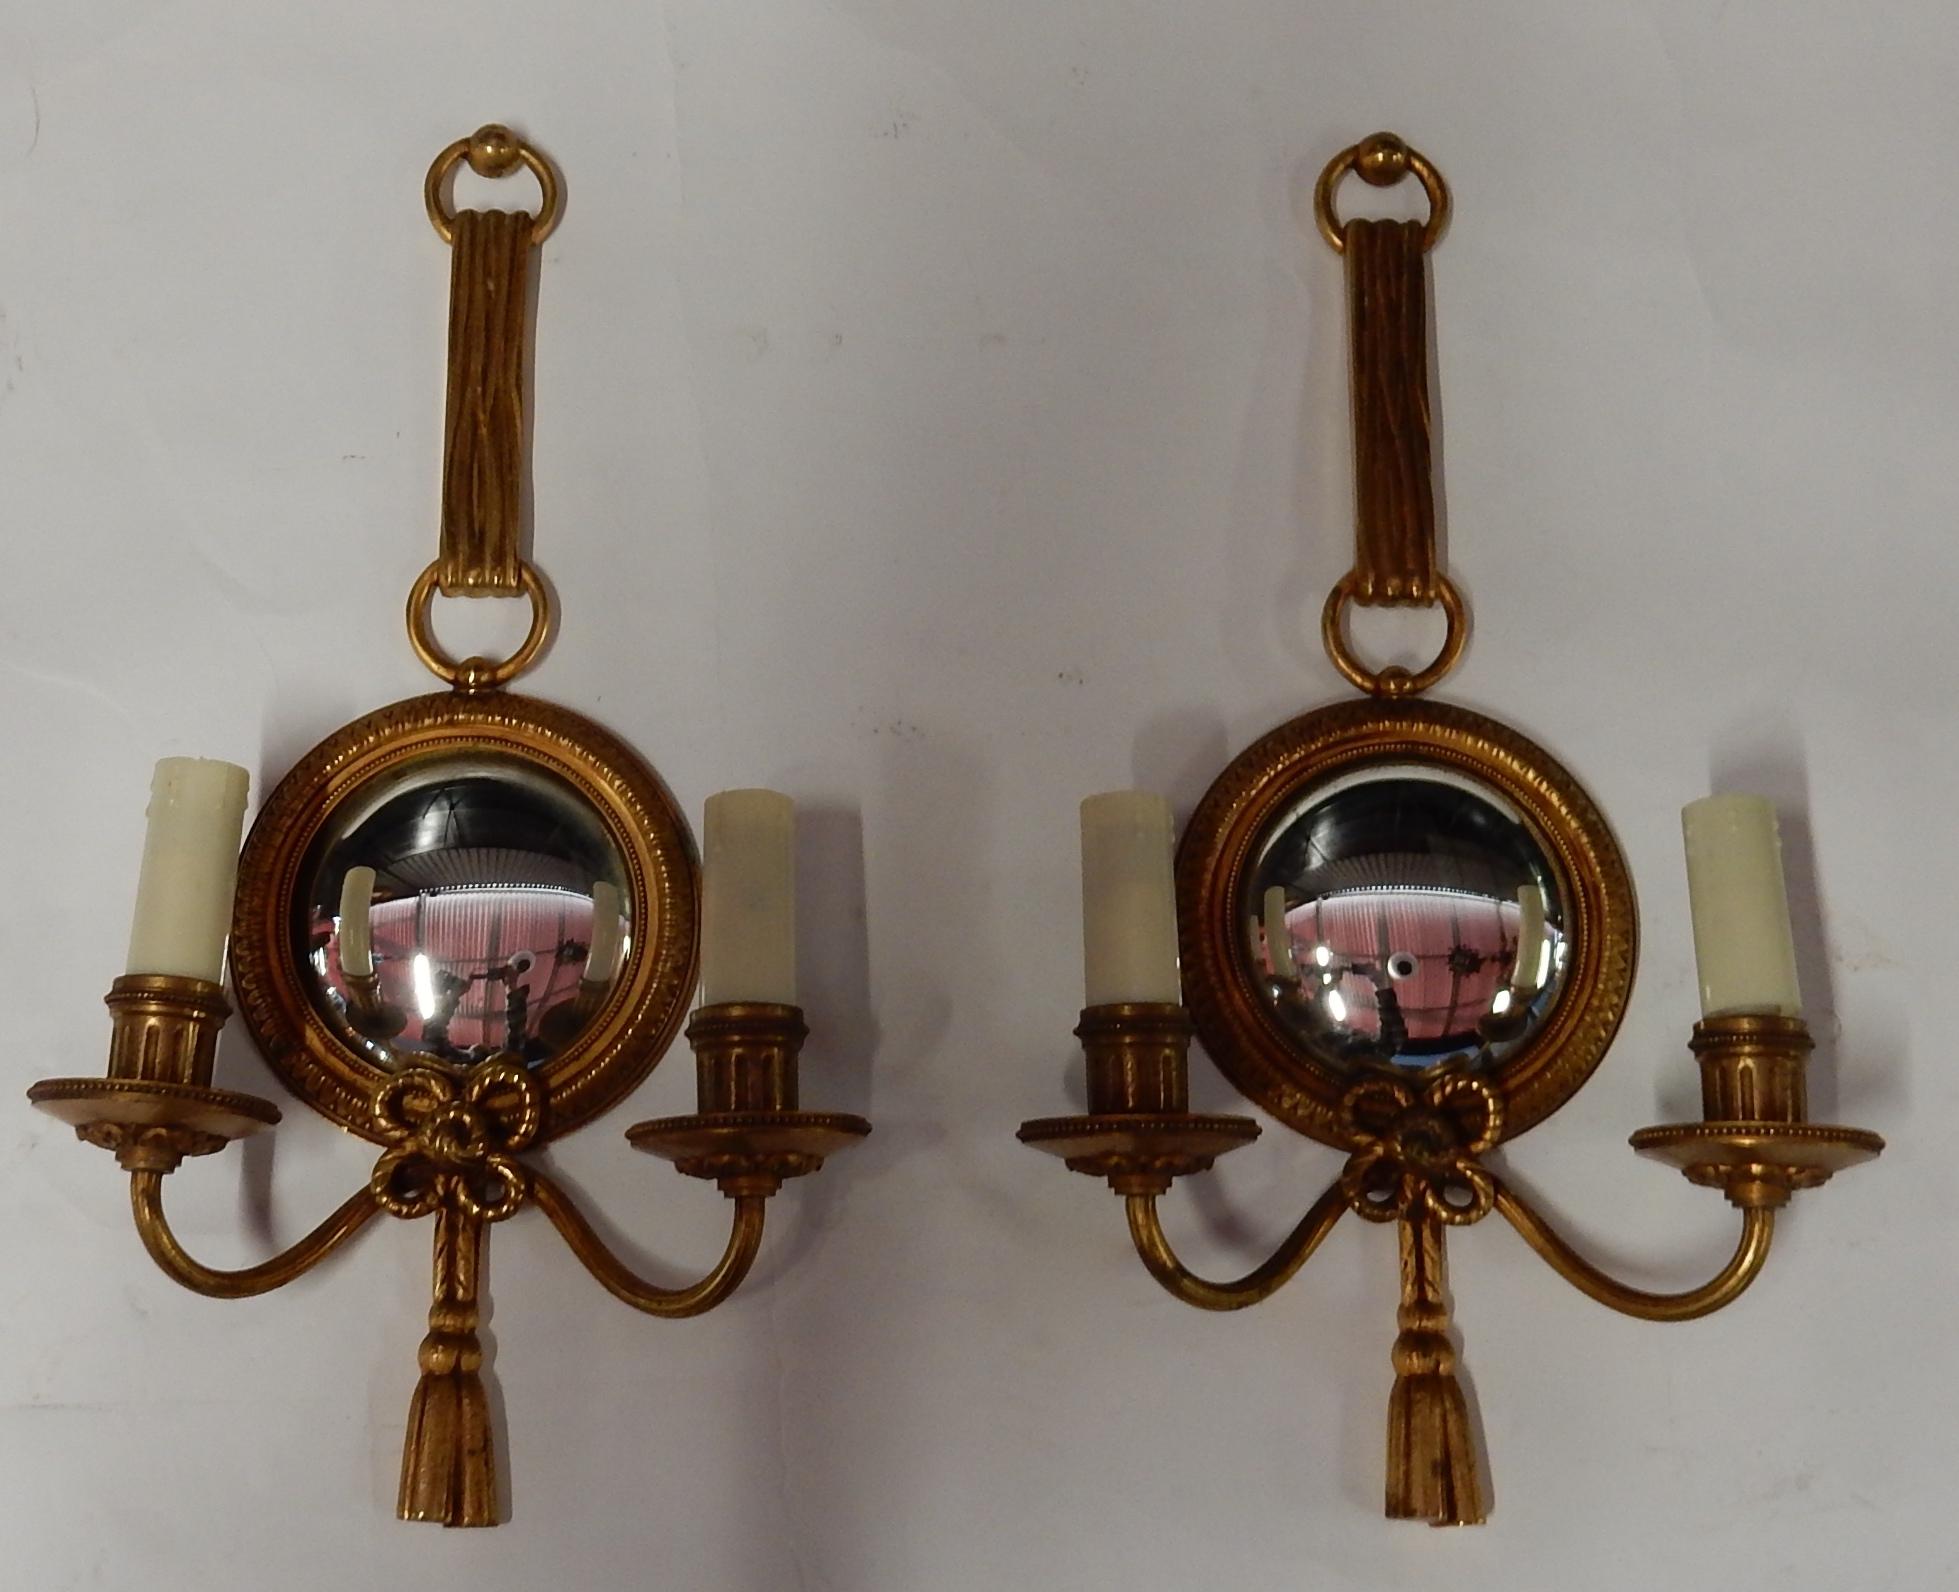 Paar Wandleuchter mit konvexem Spiegel, vergoldete Bronze, guter Zustand, Petitot signiert, alles ist verschraubt,
ca. 1950-1970
Maße: Durchmesser Rahmen Spiegel 14 cm
Durchmesser des Spiegels 10 cm.